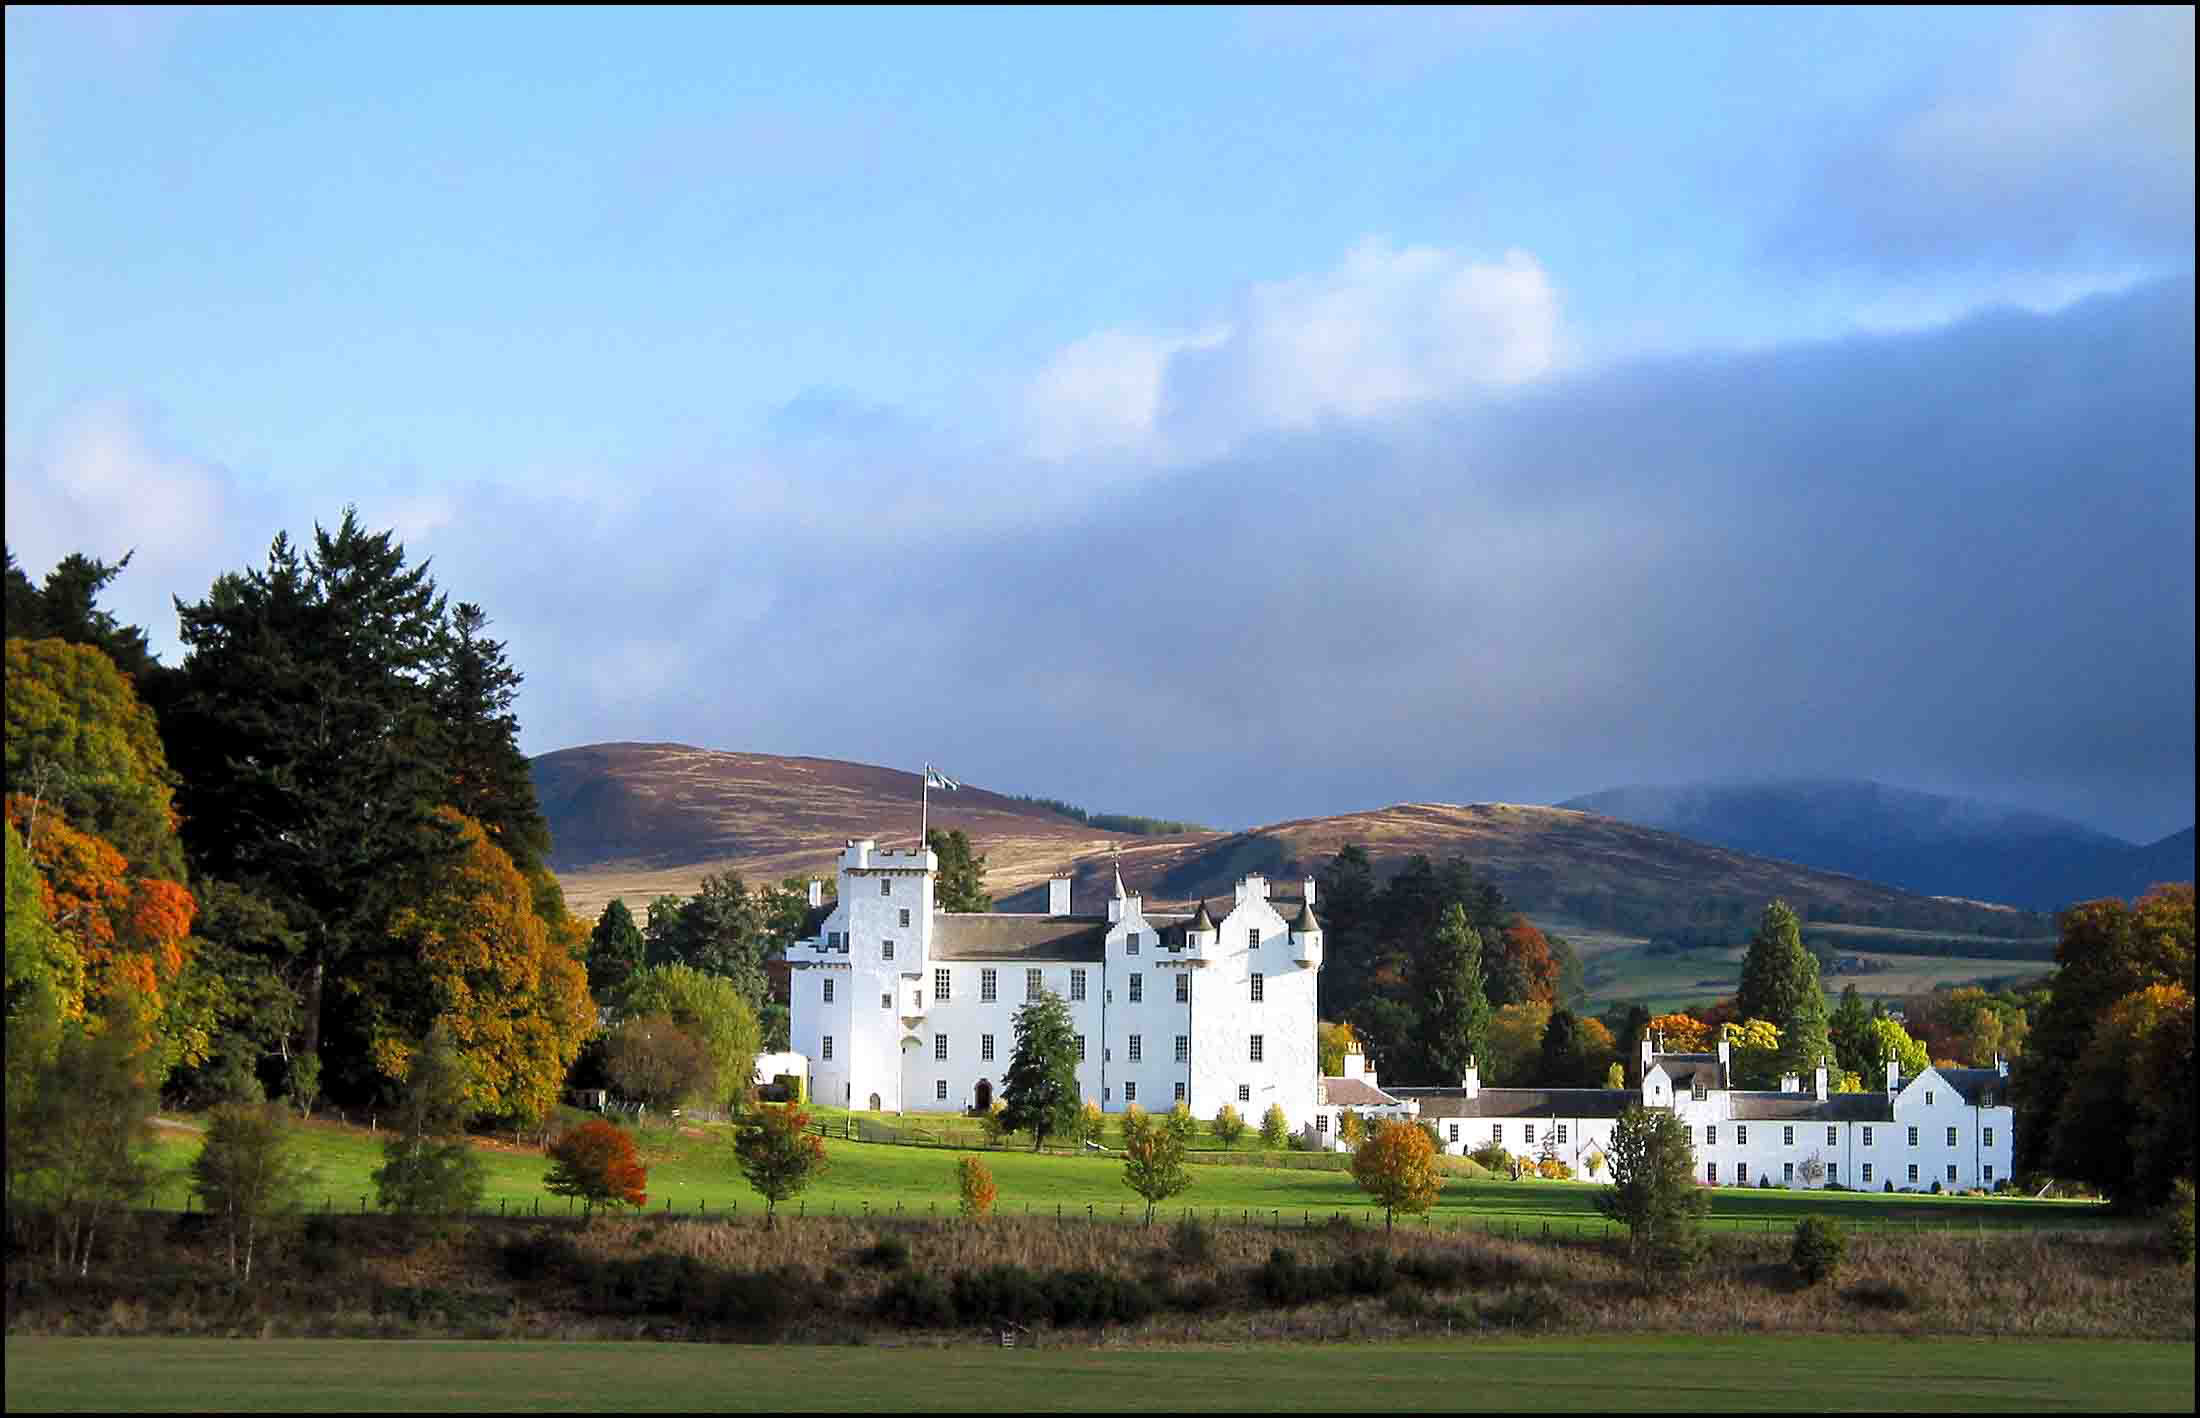 Blair Castle (Photo: Paul Booth)